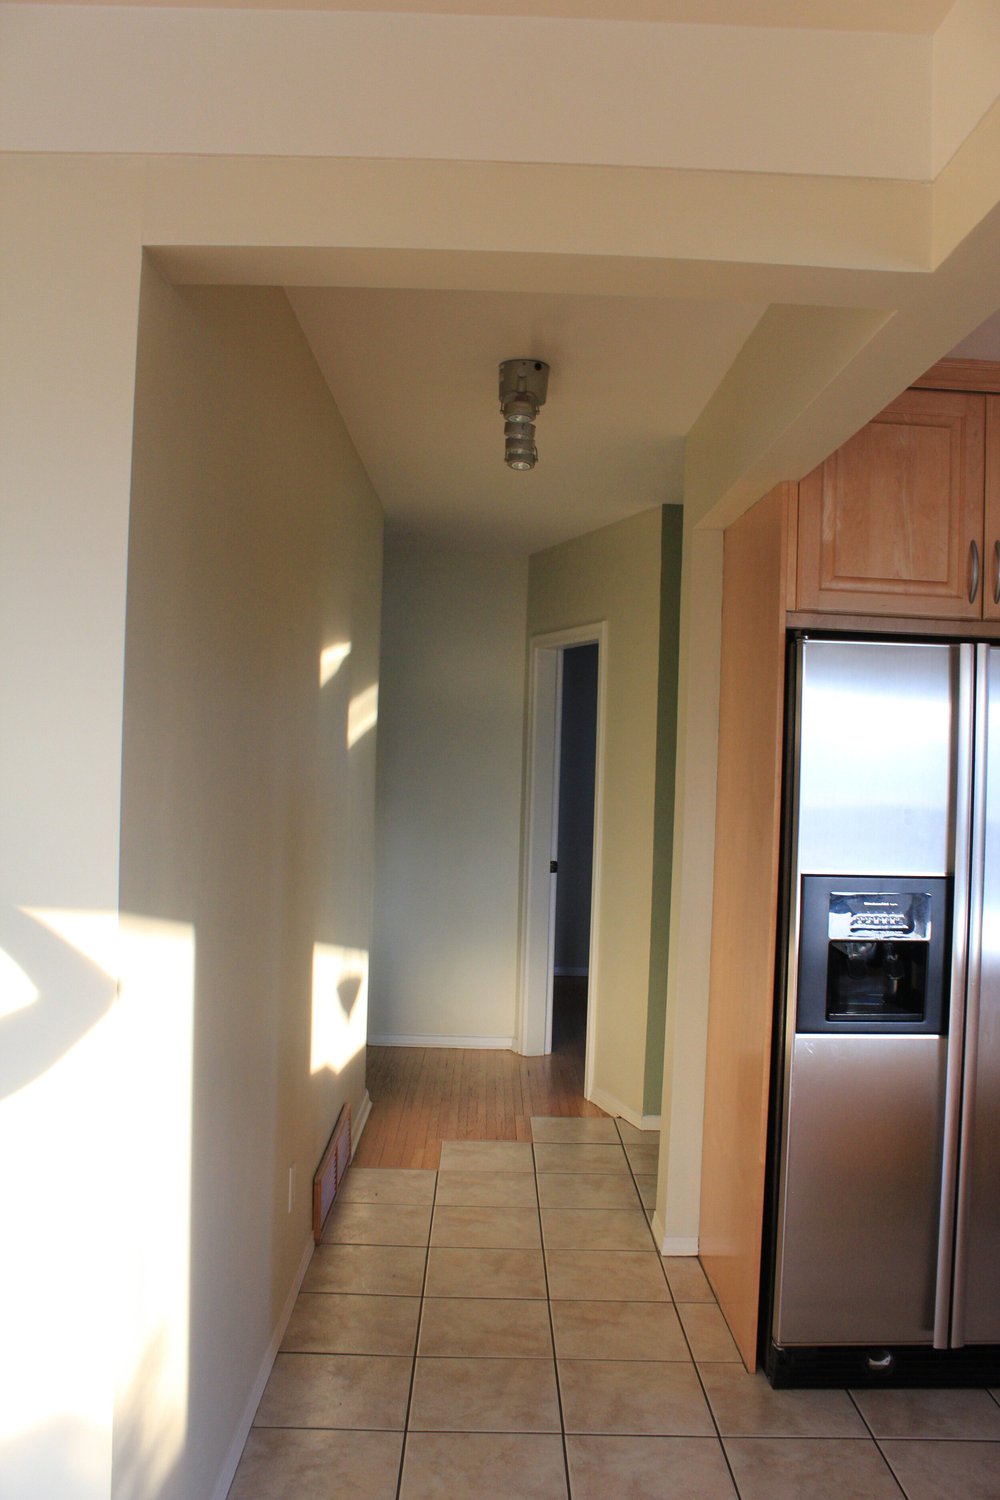 Hallway+to+Bedrooms+1.jpg